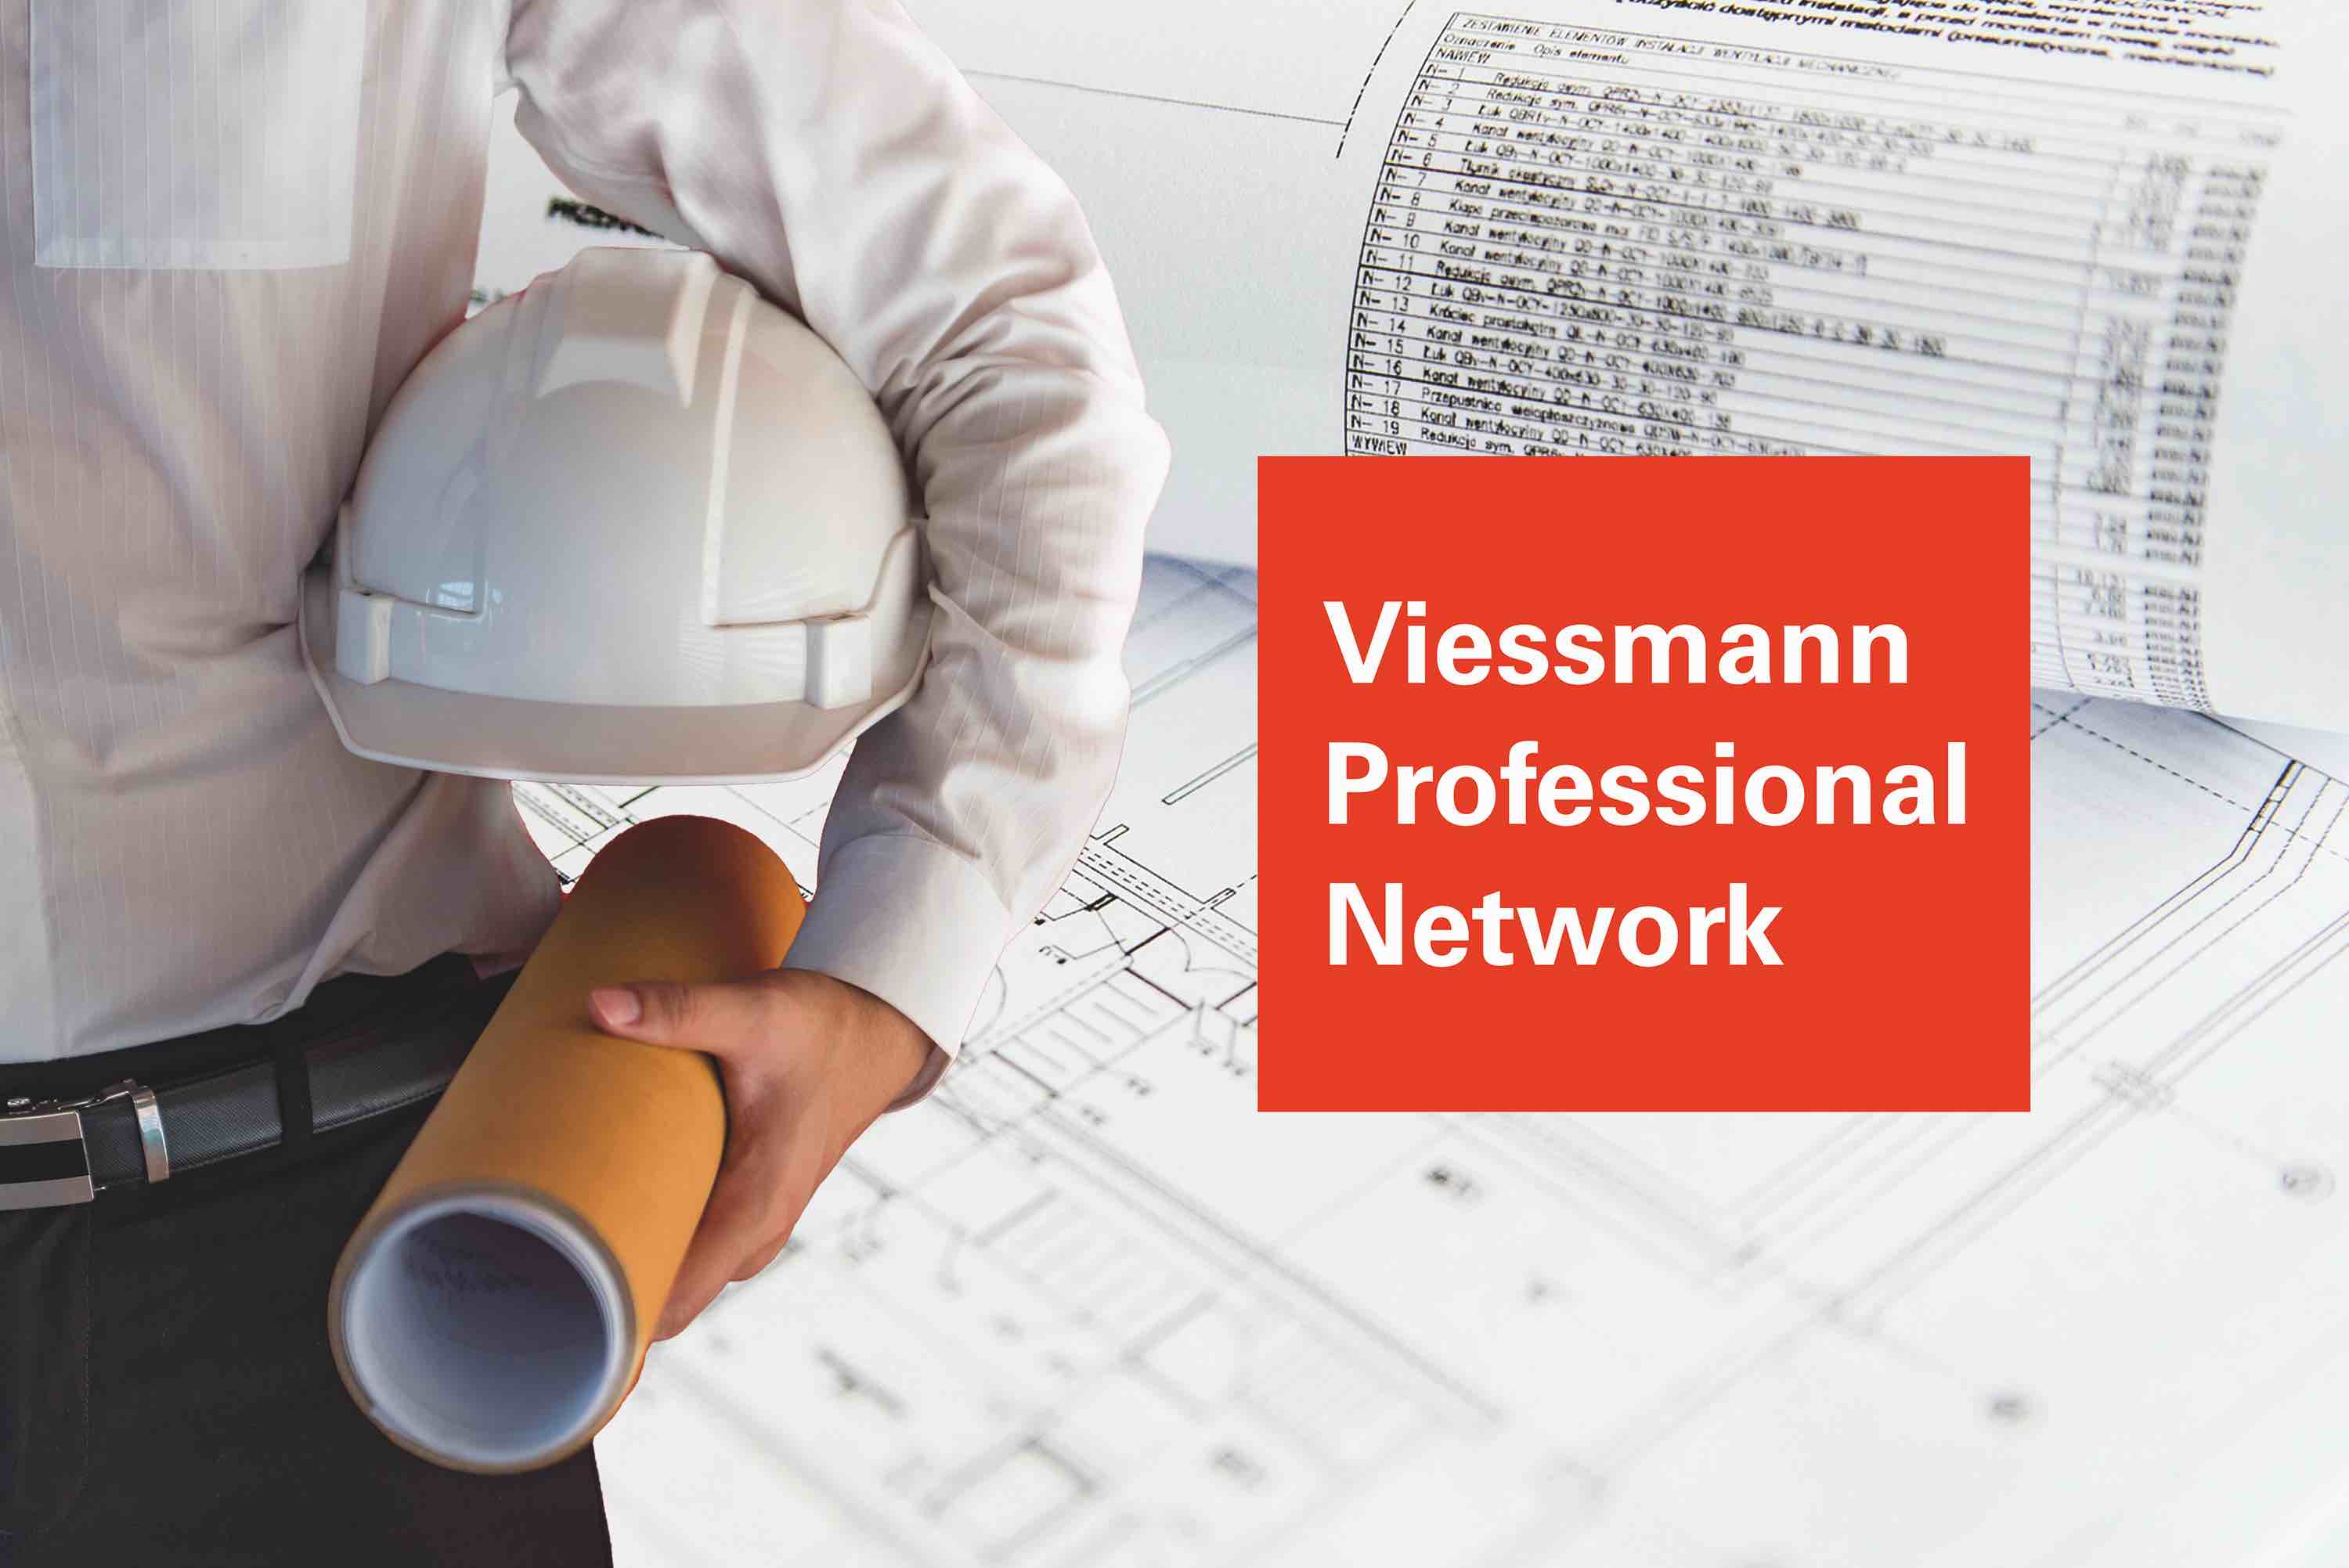 Riflettori puntati su Viessmann Professional Network: una vera e propria rete di opportunità per i progettisti e di vantaggi per gli utenti finali